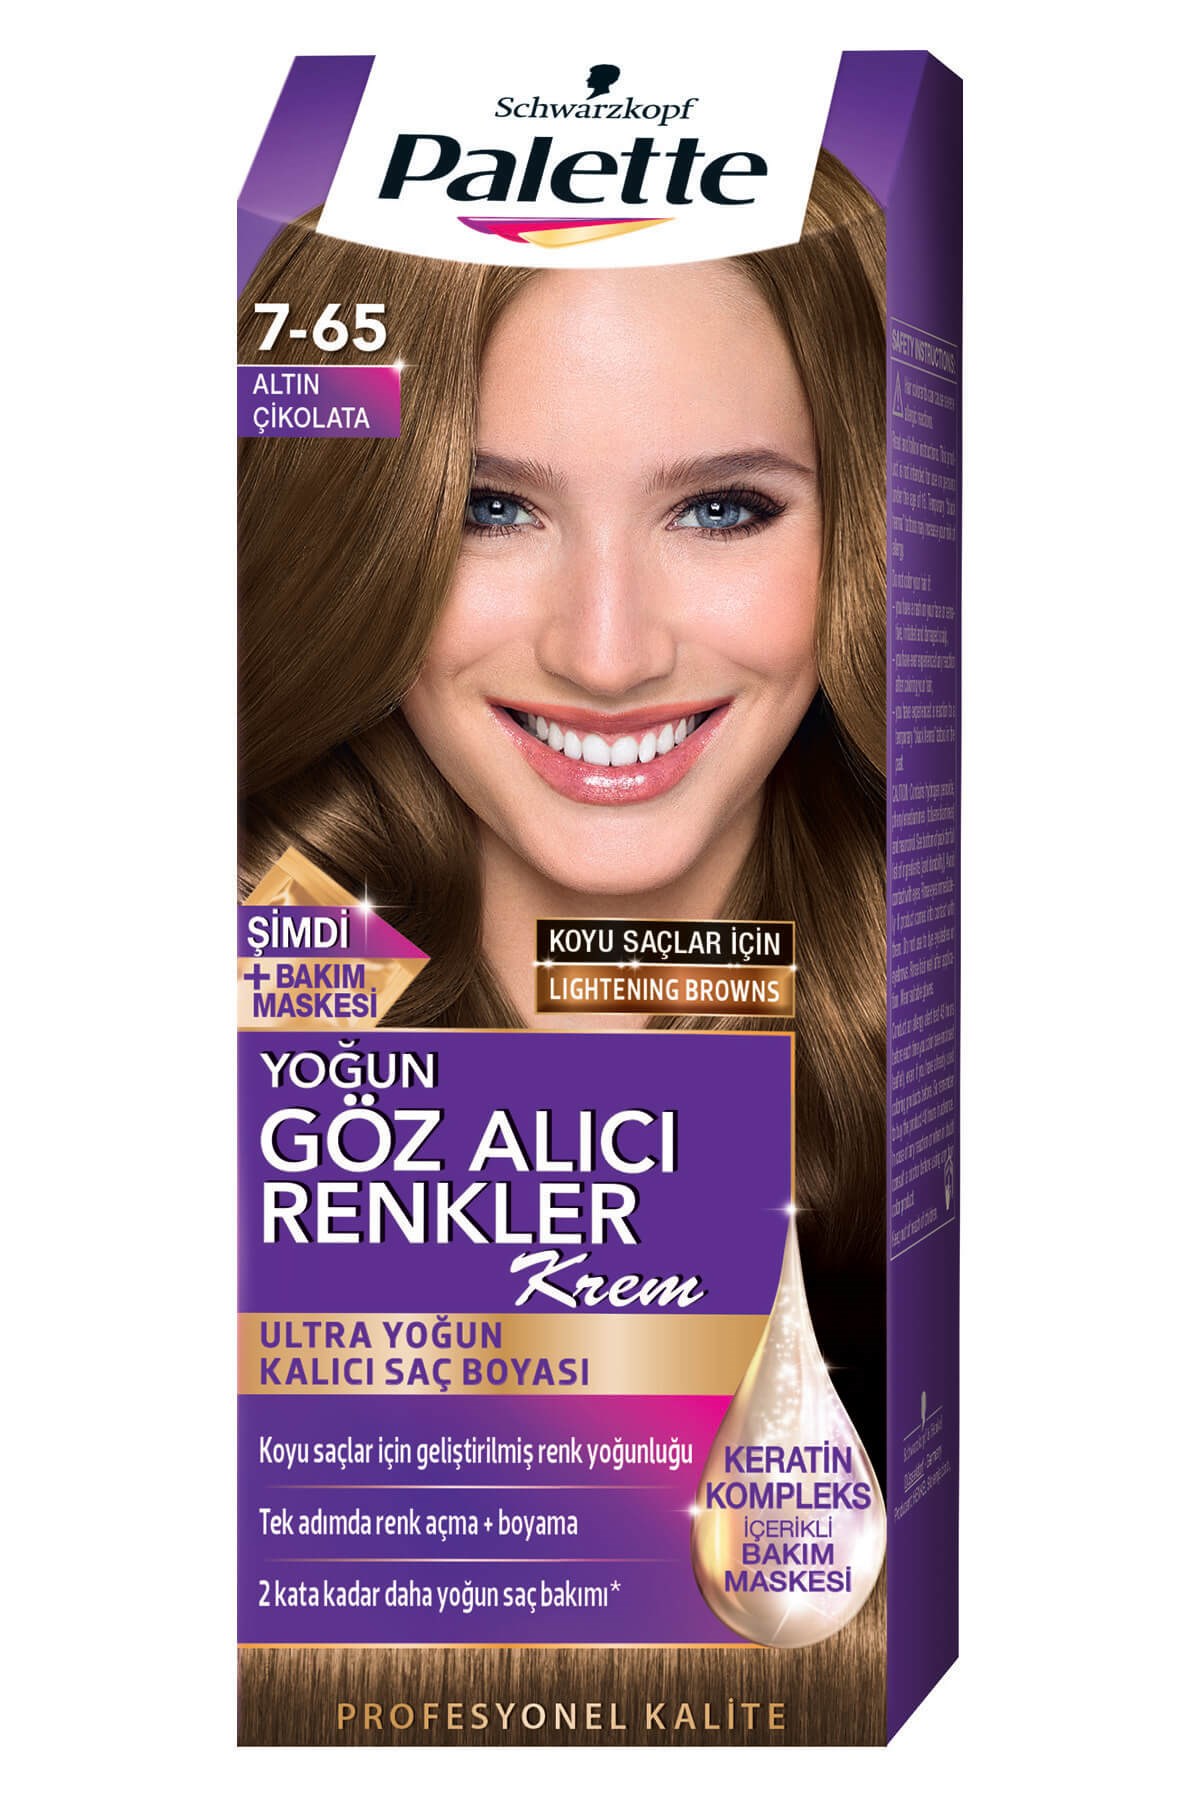 Palette Natural Saç Boyası Göz Alıcı Renkler 7-65 Altın Cikolata | Cossta  Cosmetic Station